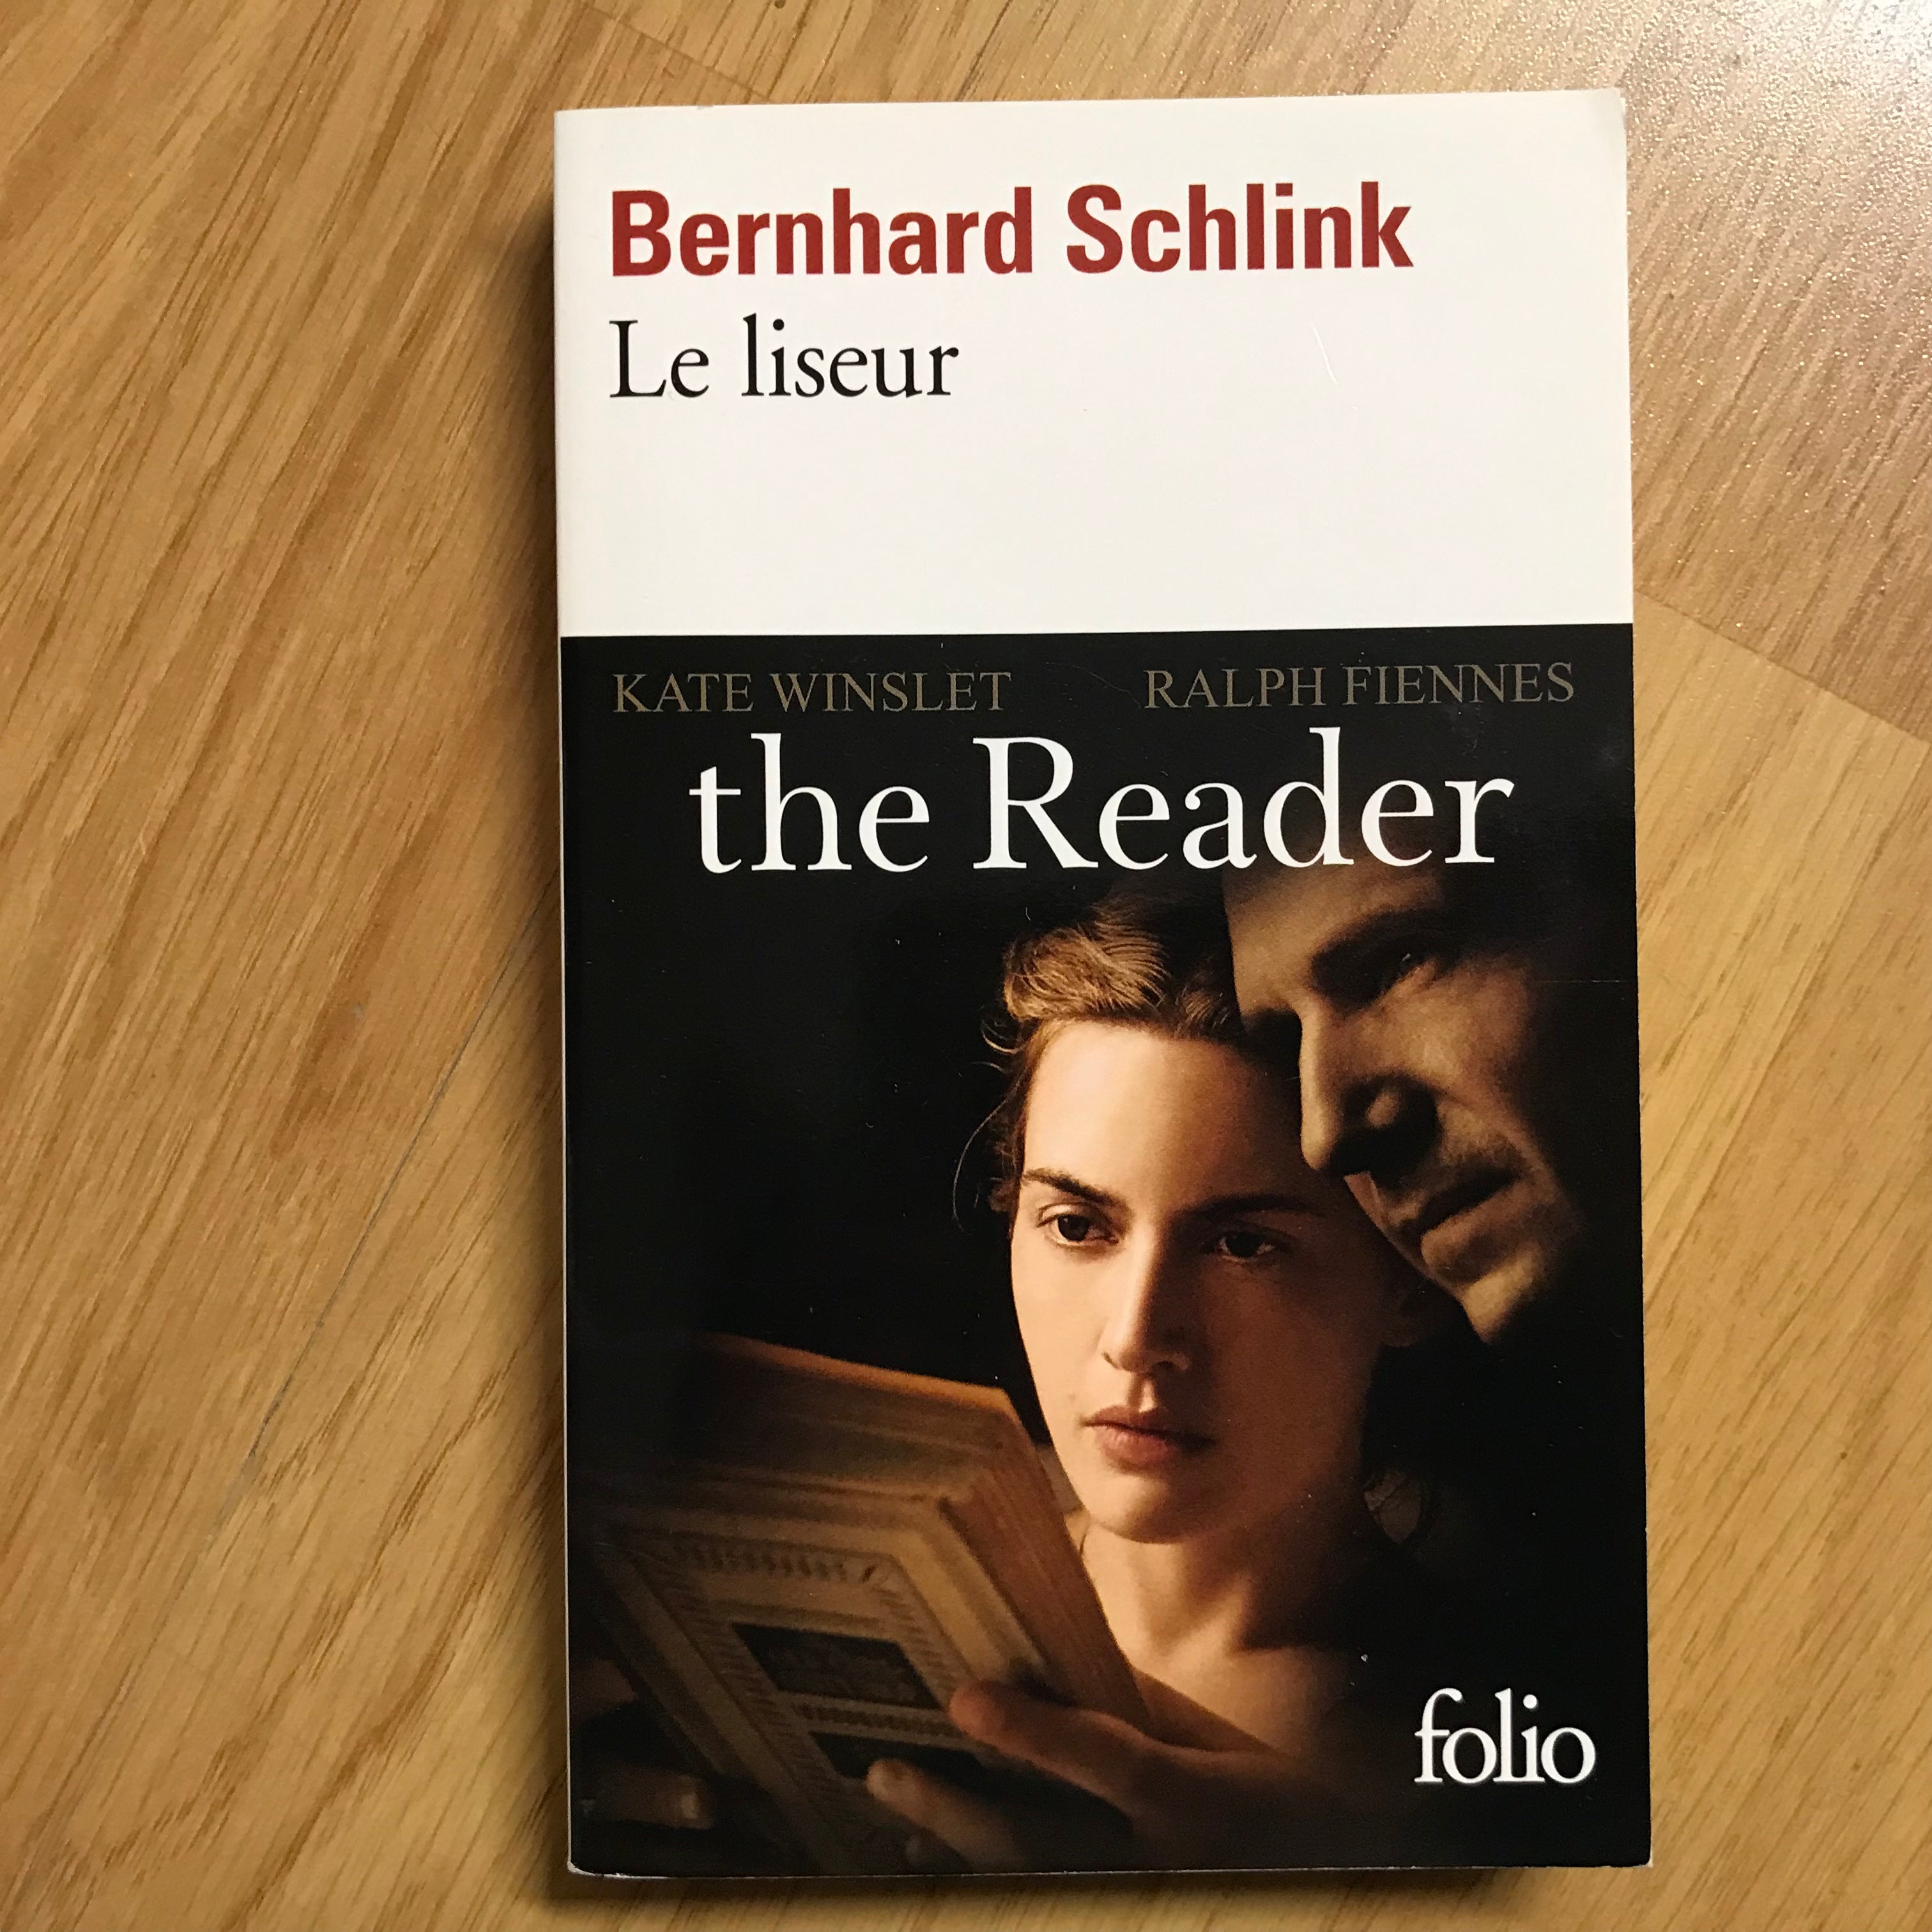 Le Liseur (The reader)